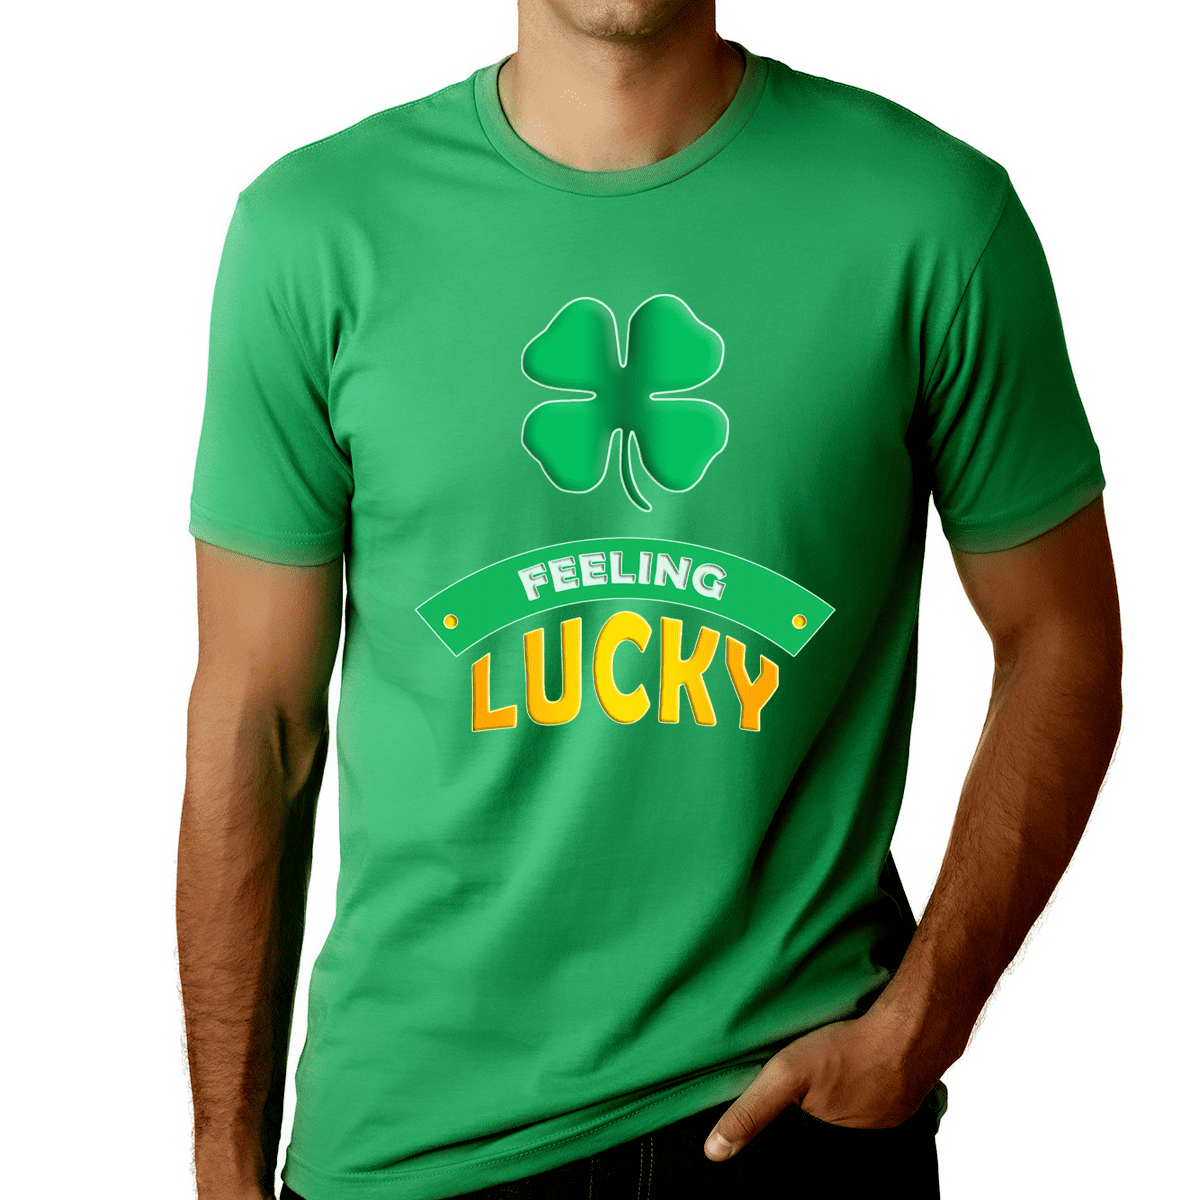 Shamrock tee Patrick's Day Shirt for Men St Patrick's Shirt for Women Luck Graphic Shirt Luck Shirt Patrick's Day Shirt St St